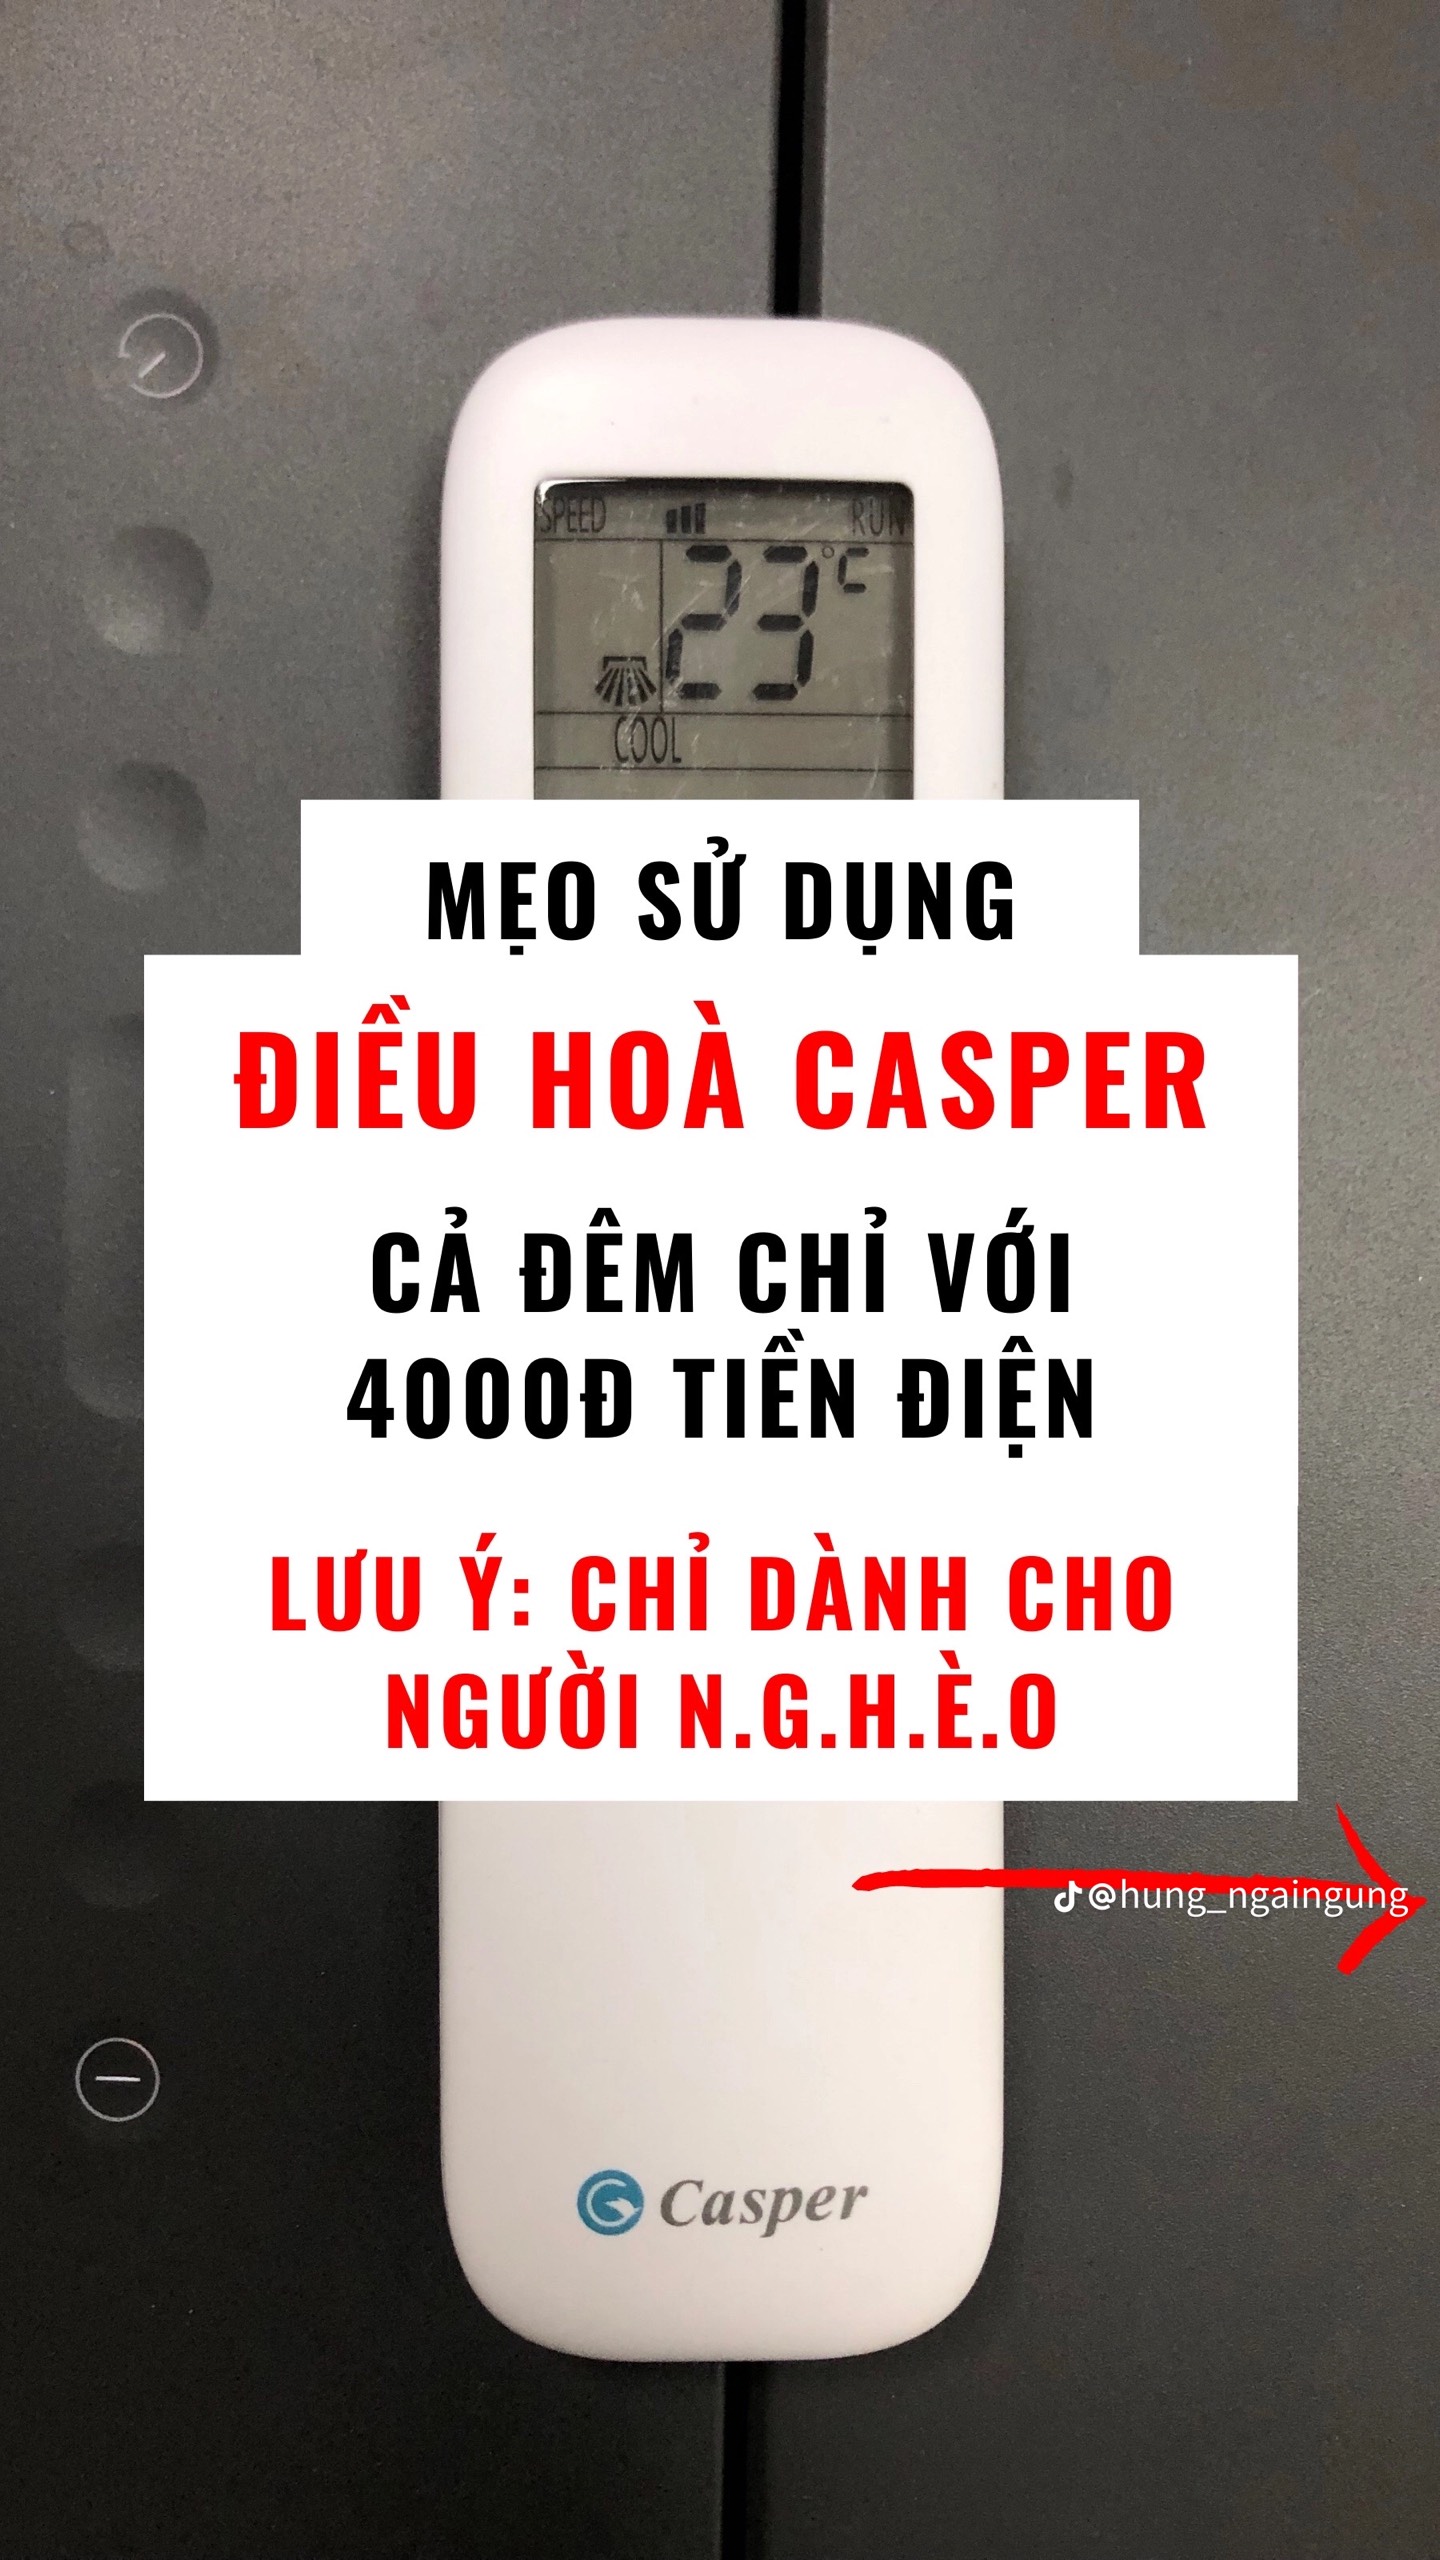 Cách điều chỉnh điều hòa Casper sao cho tiết kiệm điện chỉ hết 4000đ / đêm